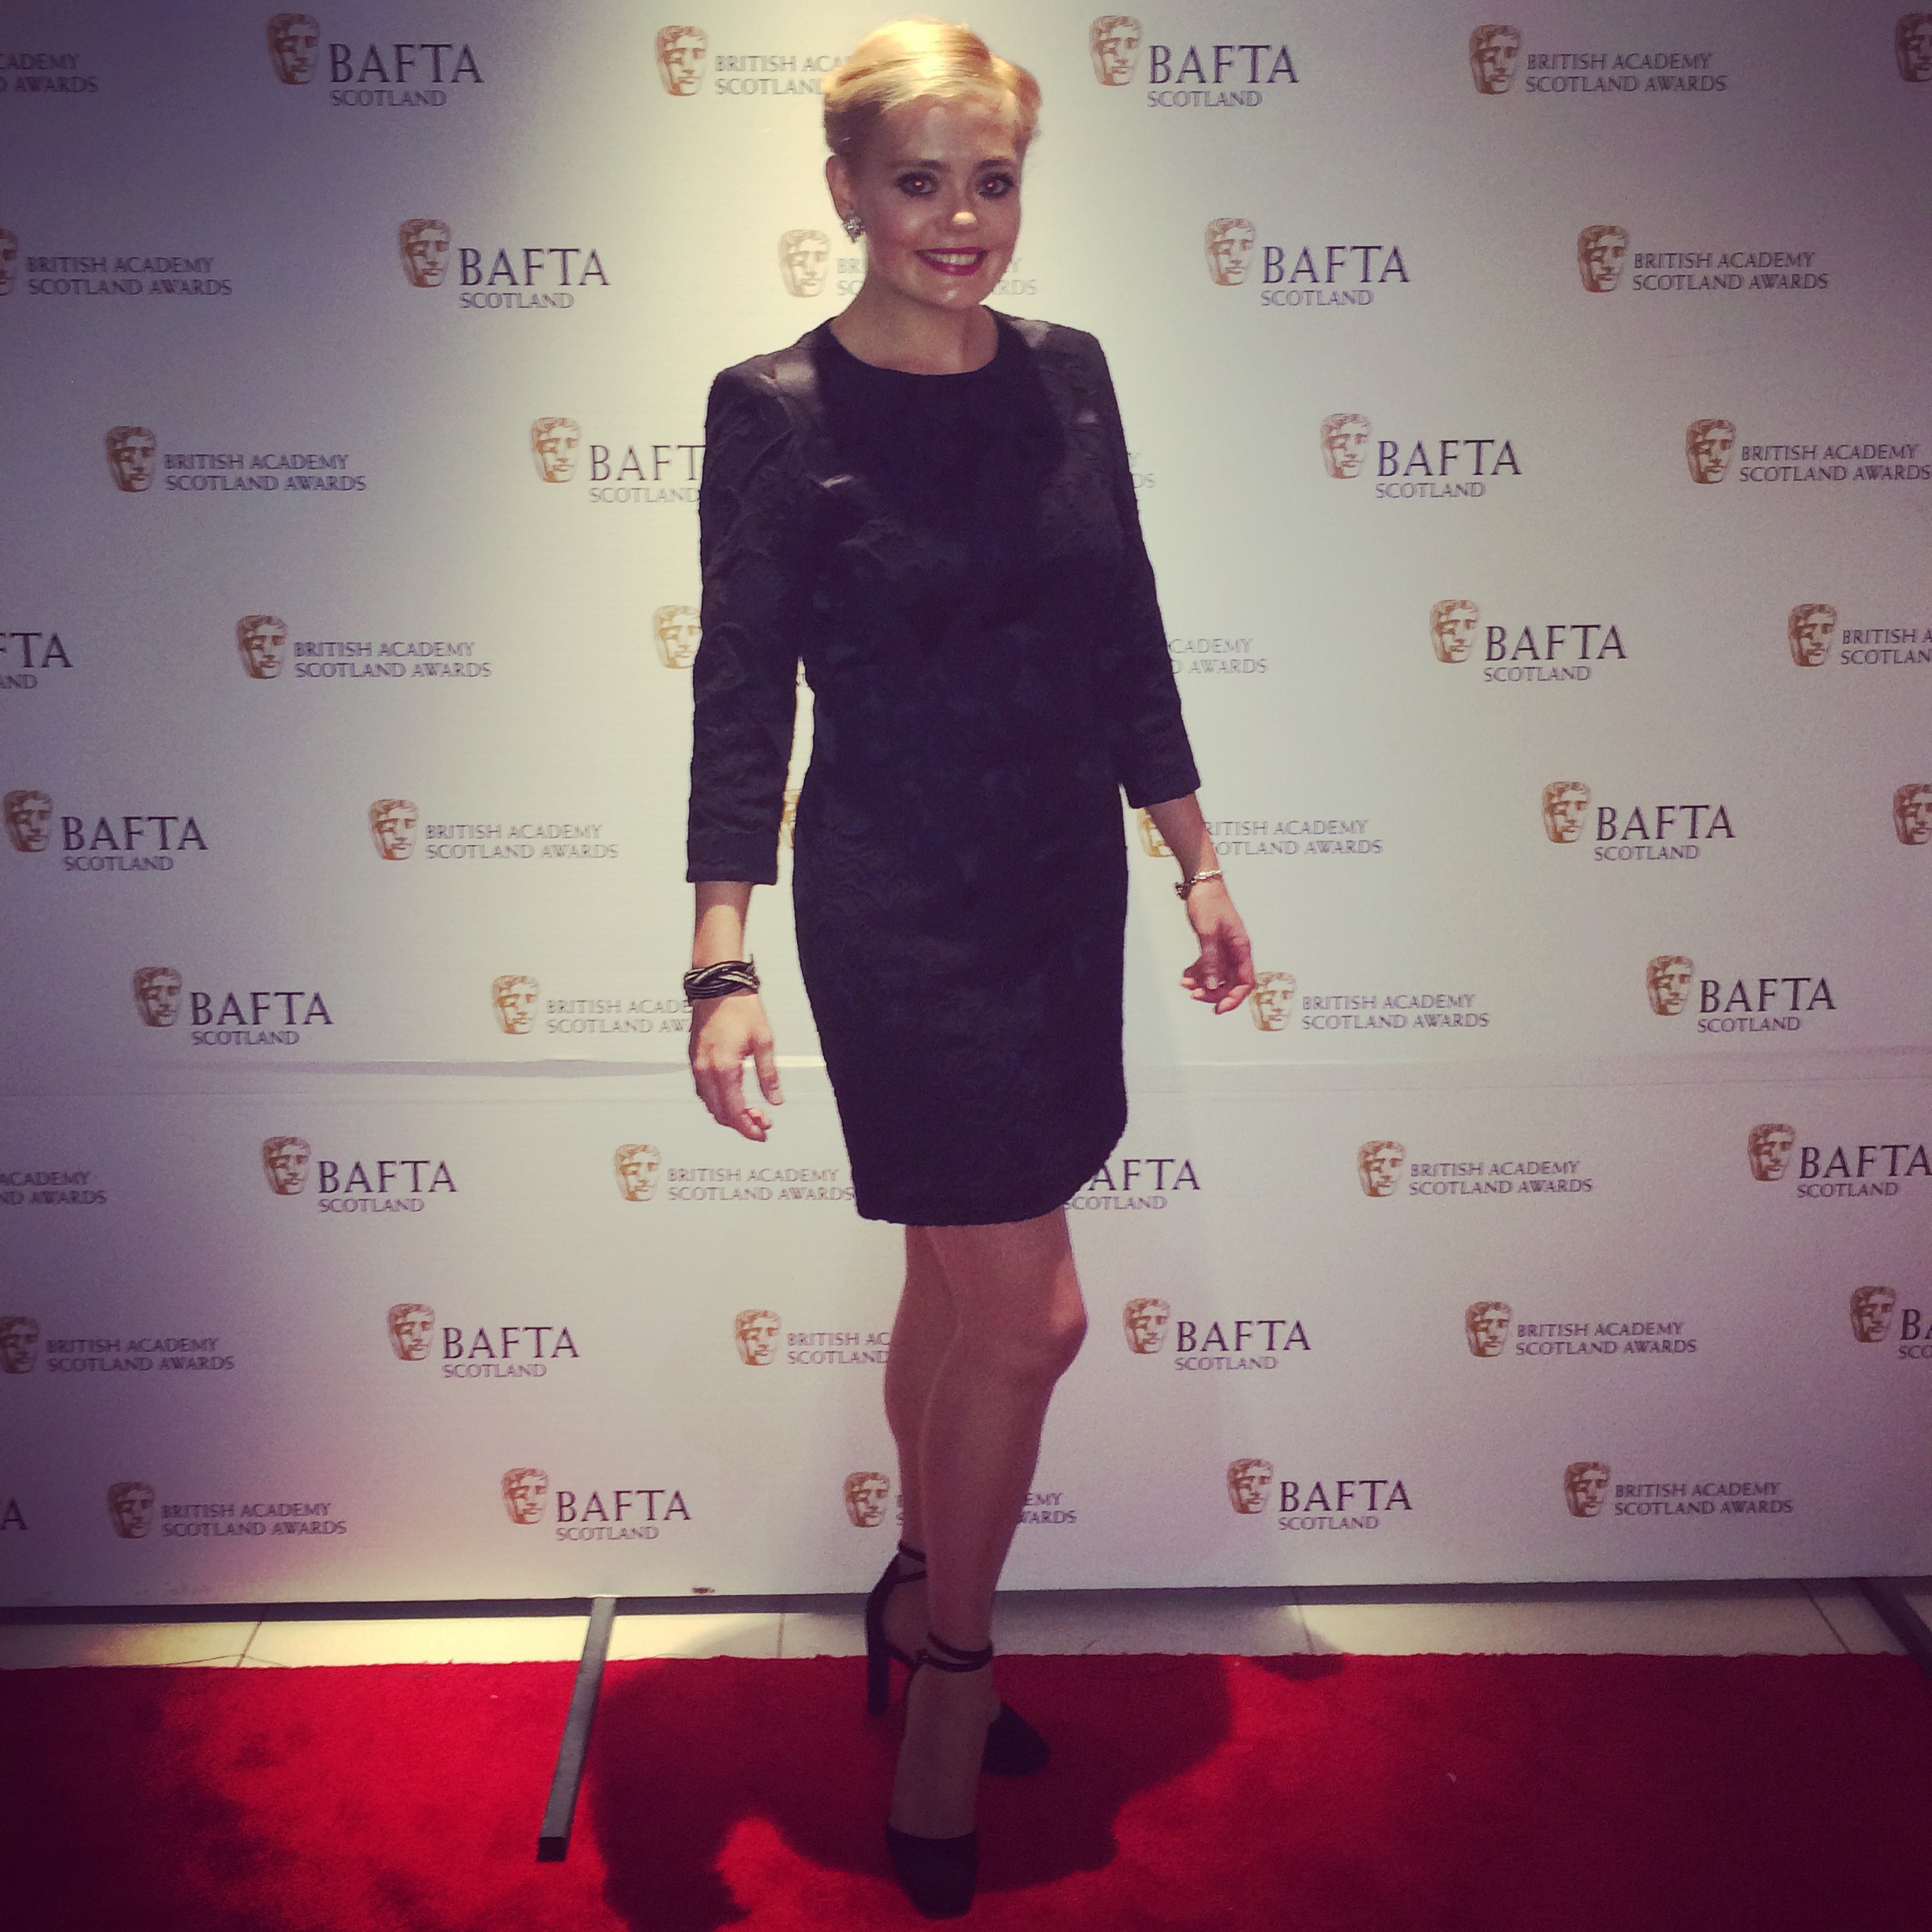 Attending the Scottish BAFTA Awards, 2015